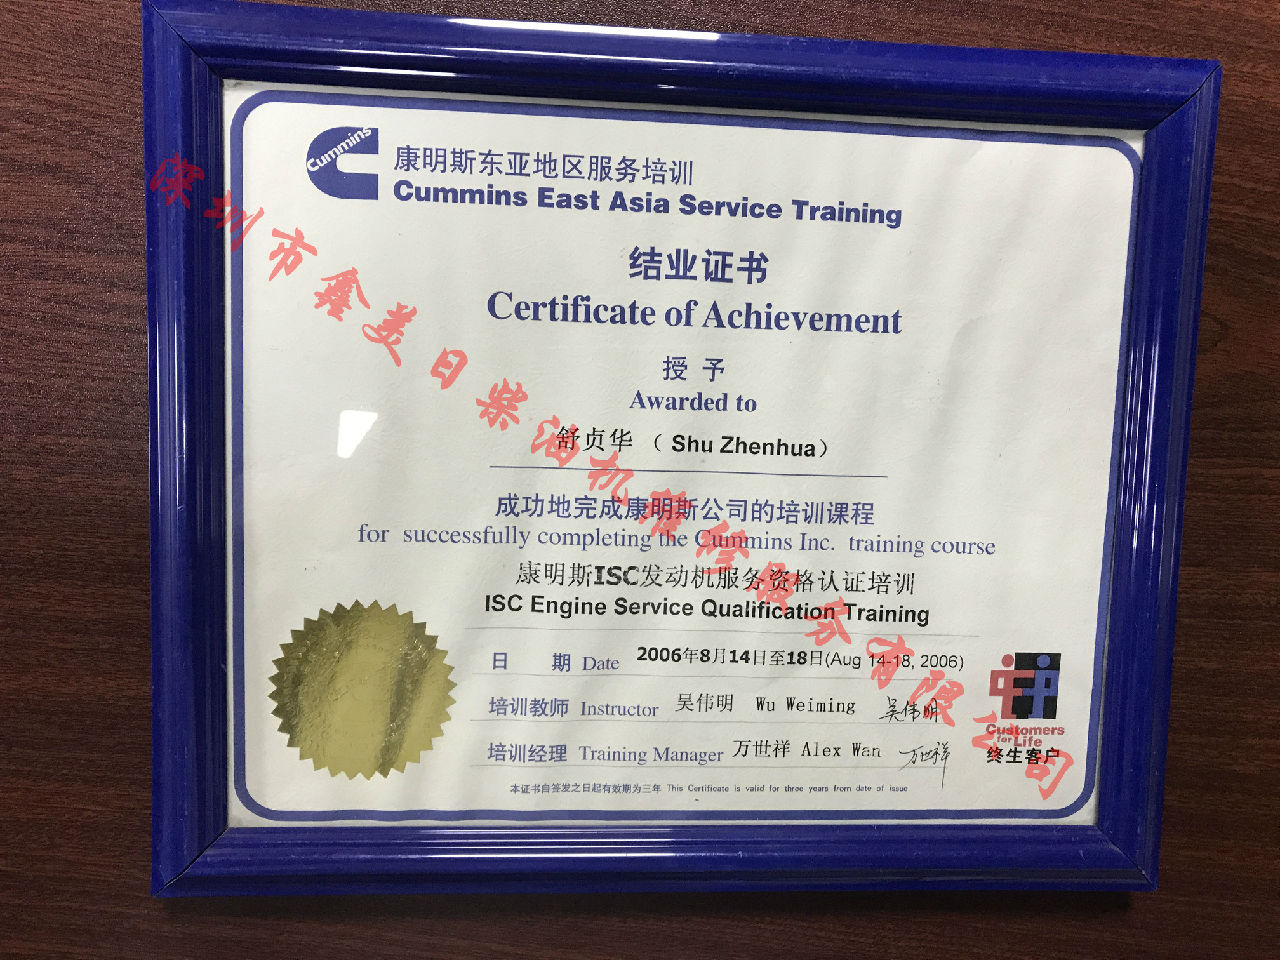 2006年 北京康明斯 舒貞華 ISC  服務資格認證培訓證書